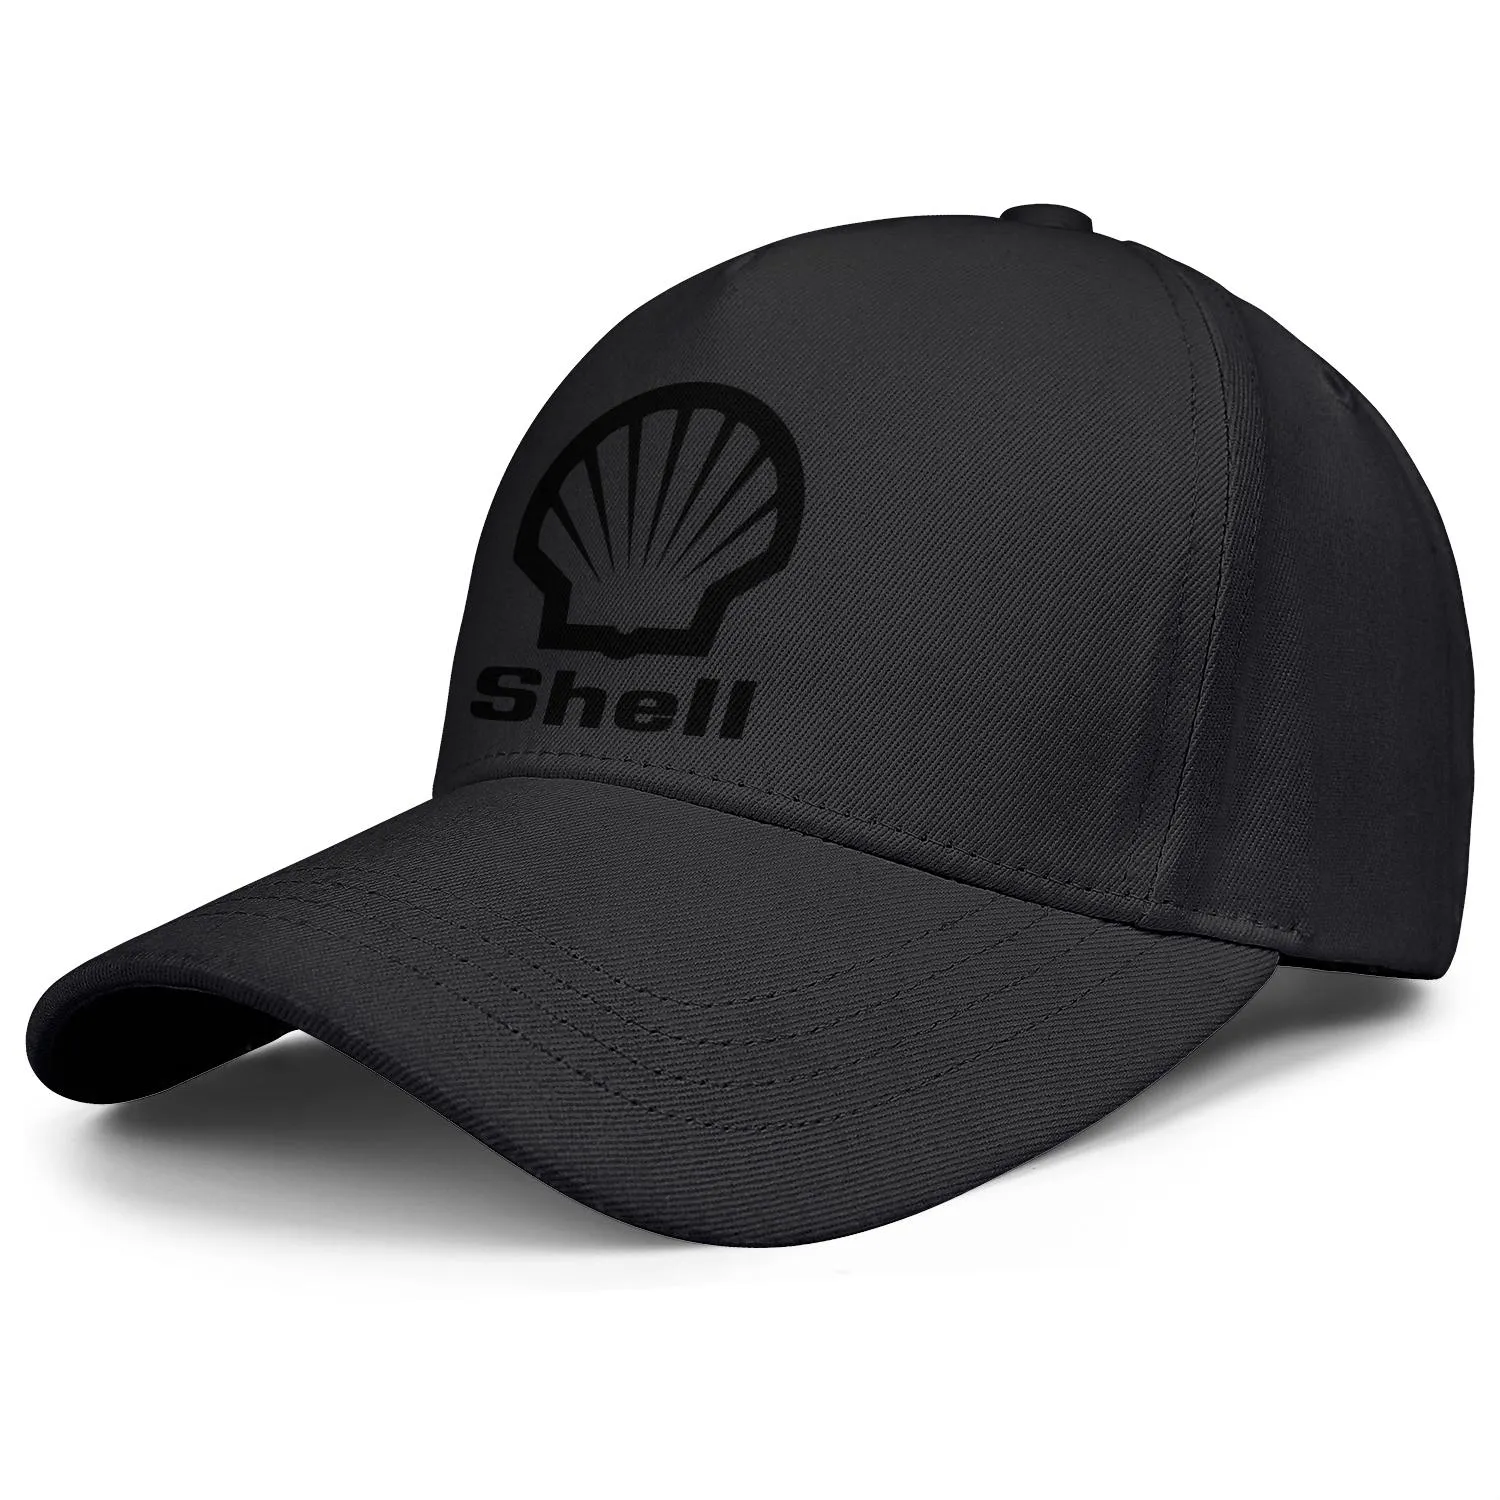 Shell Benzin -Tankstelle Logo Herren und Frauen verstellbare Trucker -Kappe ausgestattet Vintage niedliche Baseballhats Locator Benzin Symbo9986509